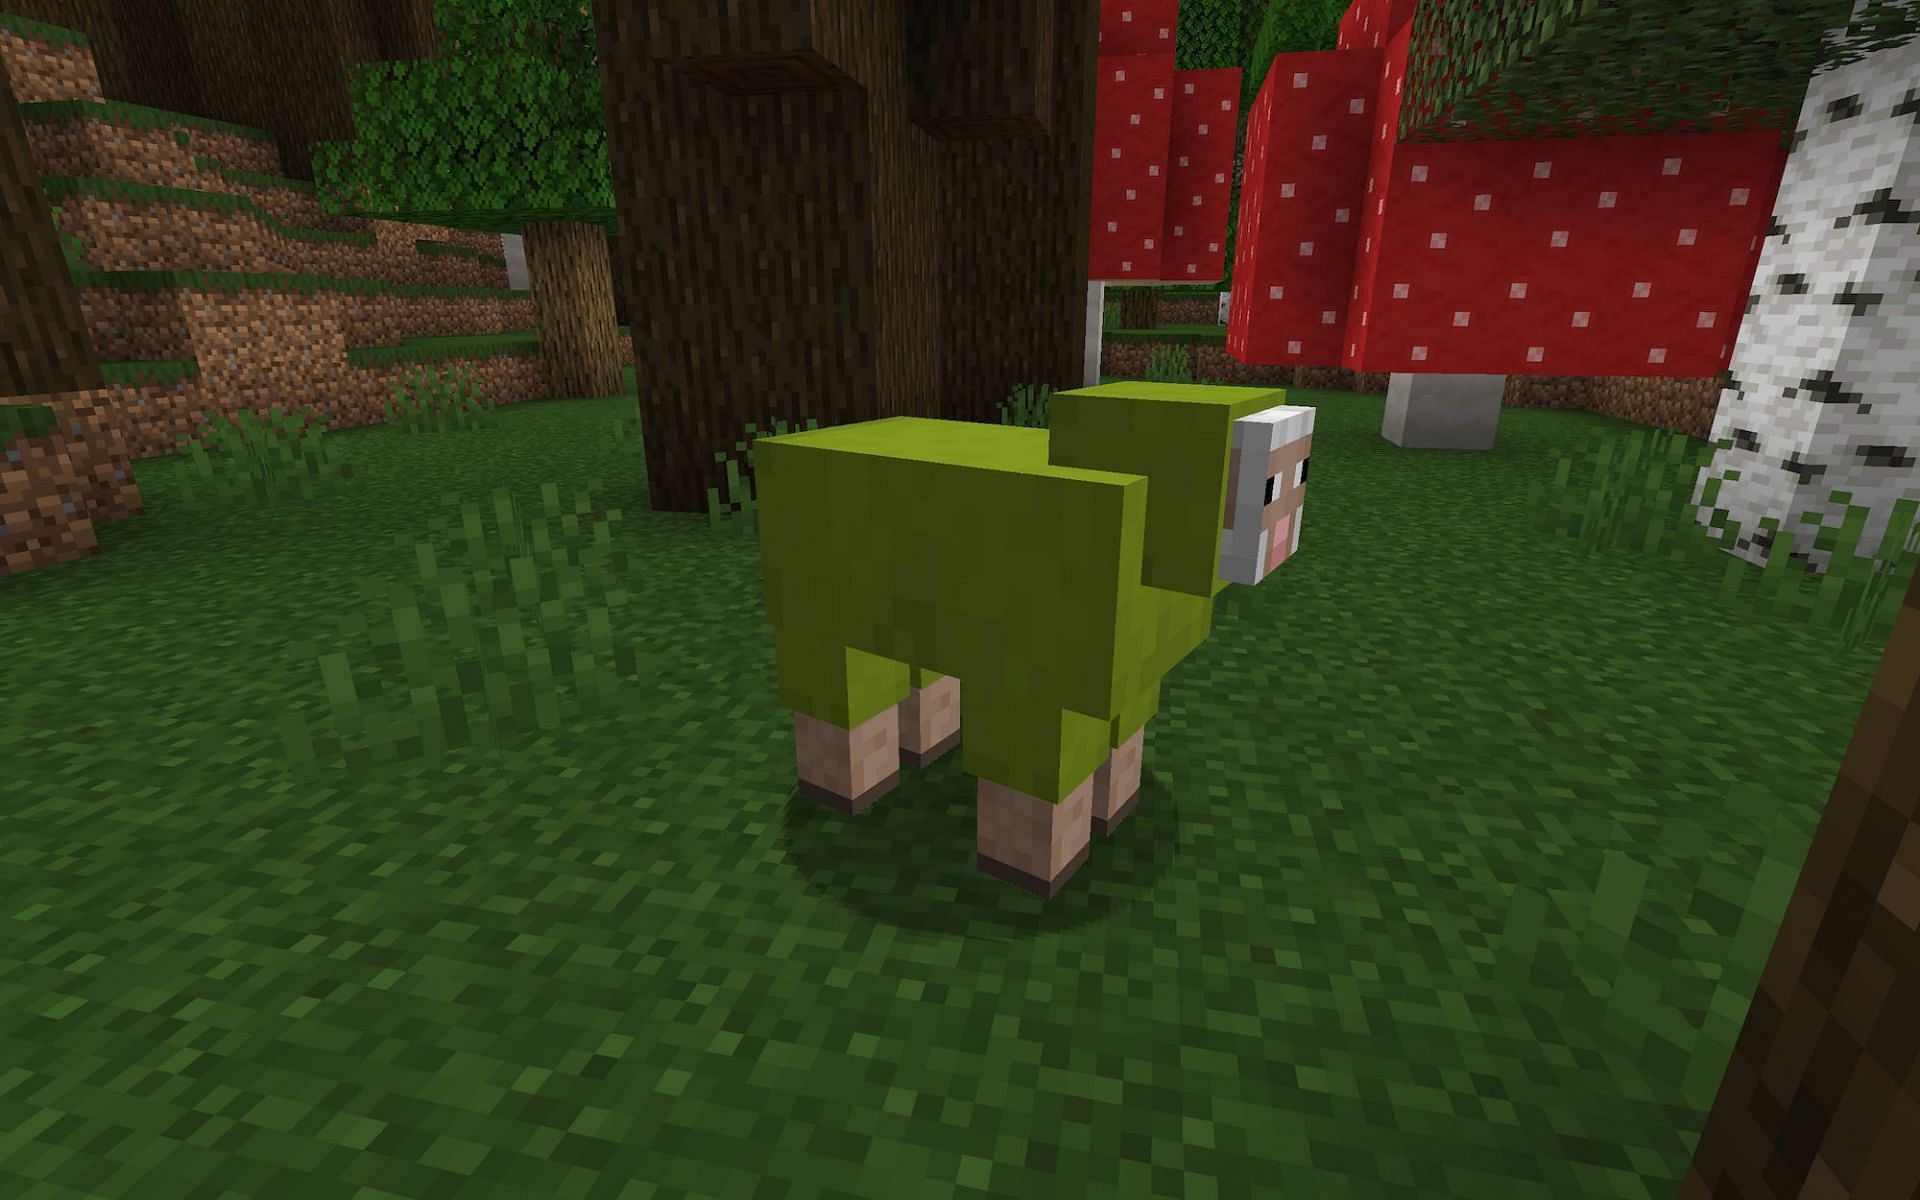 Rainbow sheep [Image via Minecraft]